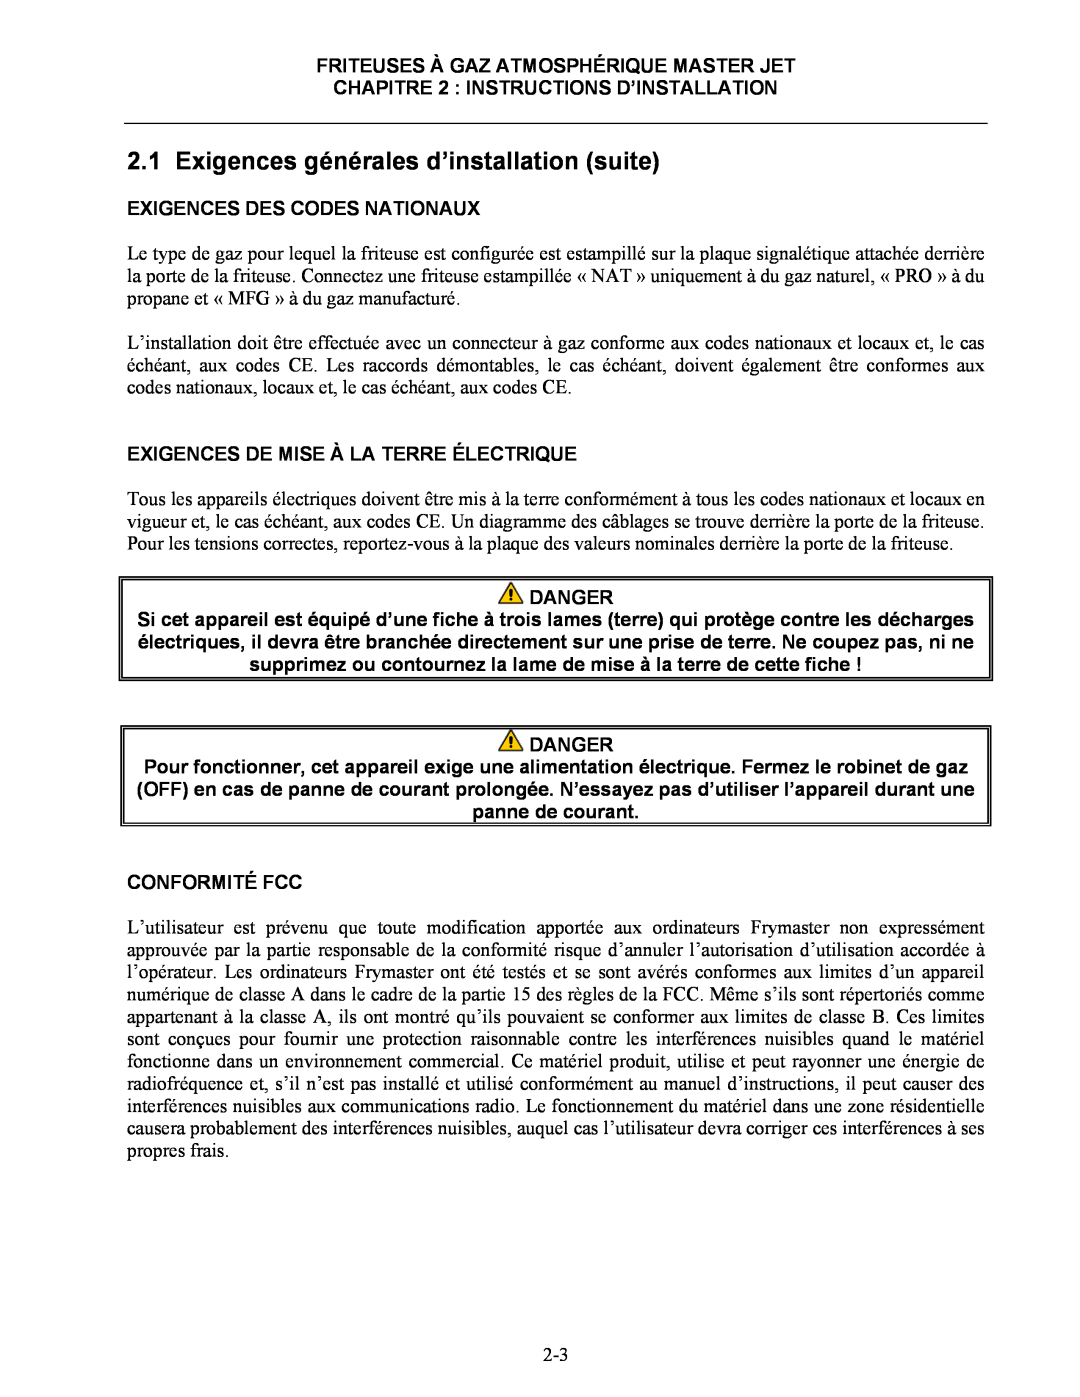 Frymaster CF manual Exigences Des Codes Nationaux, Exigences De Mise À La Terre Électrique, Conformité Fcc, Danger 